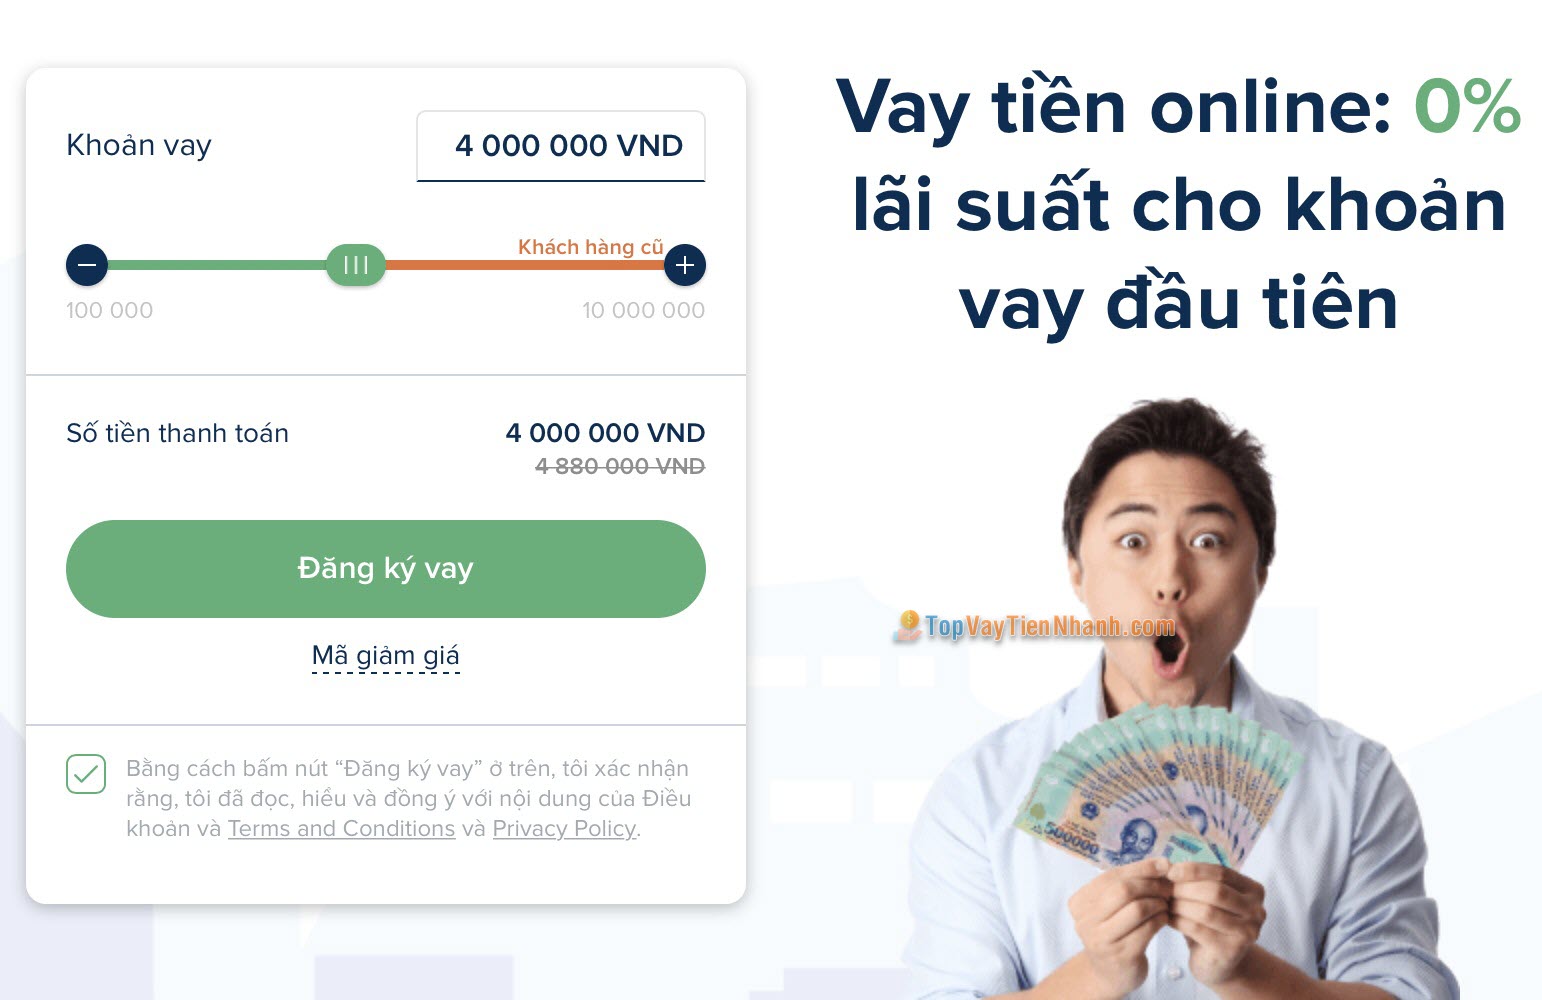 Senmo - App vay tiền online nhận tiền nhanh chóng